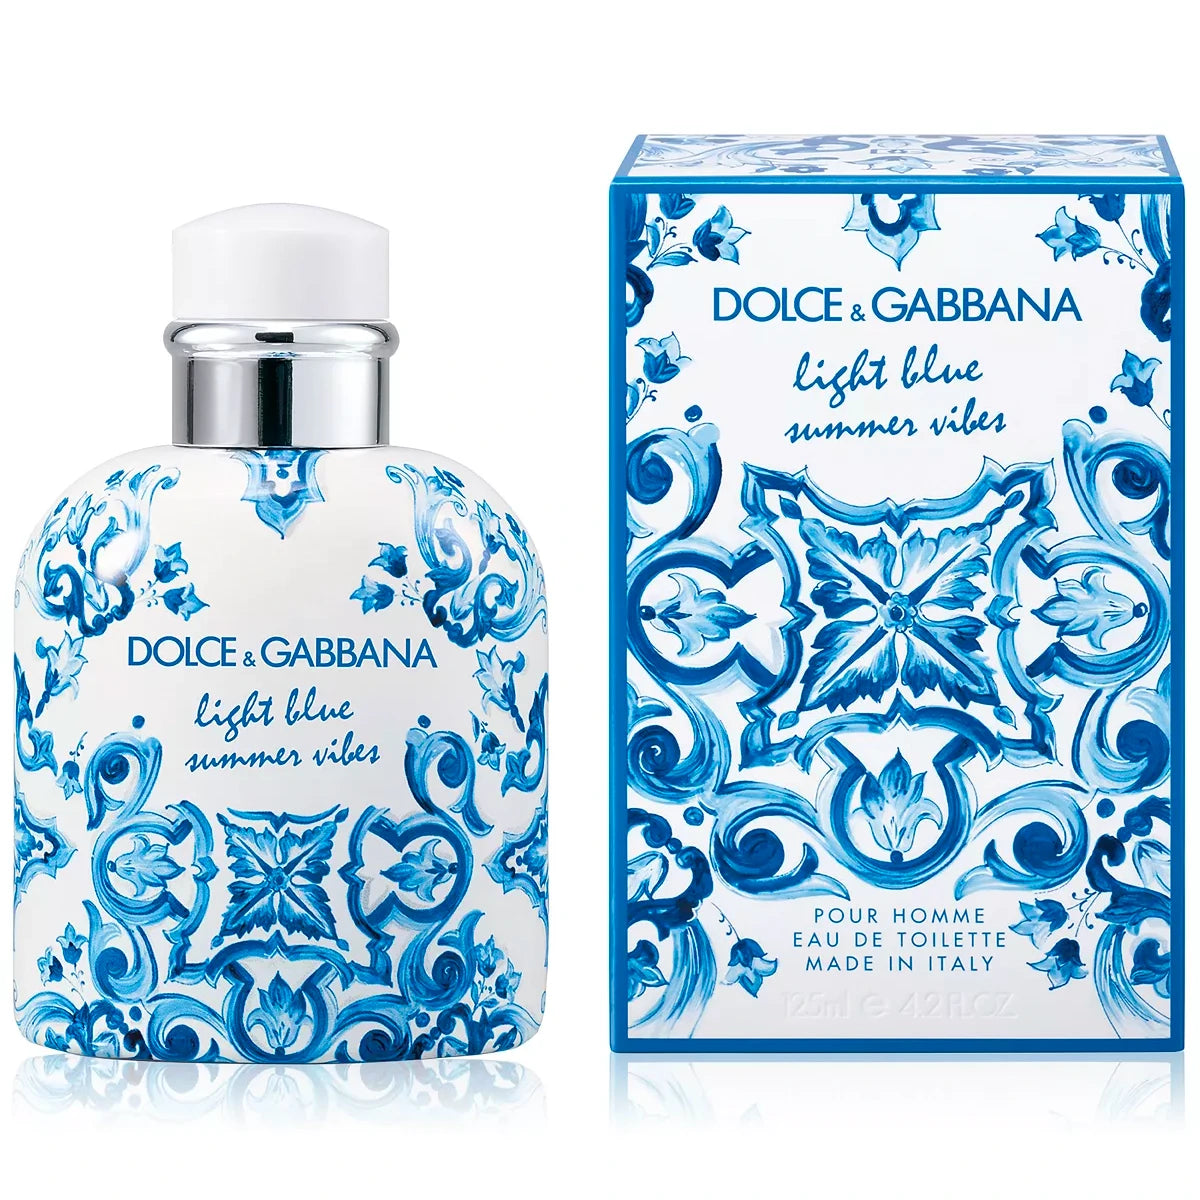 Dolce&Gabbana Light Blue 4.2oz Men's Eau de Toilette for sale online